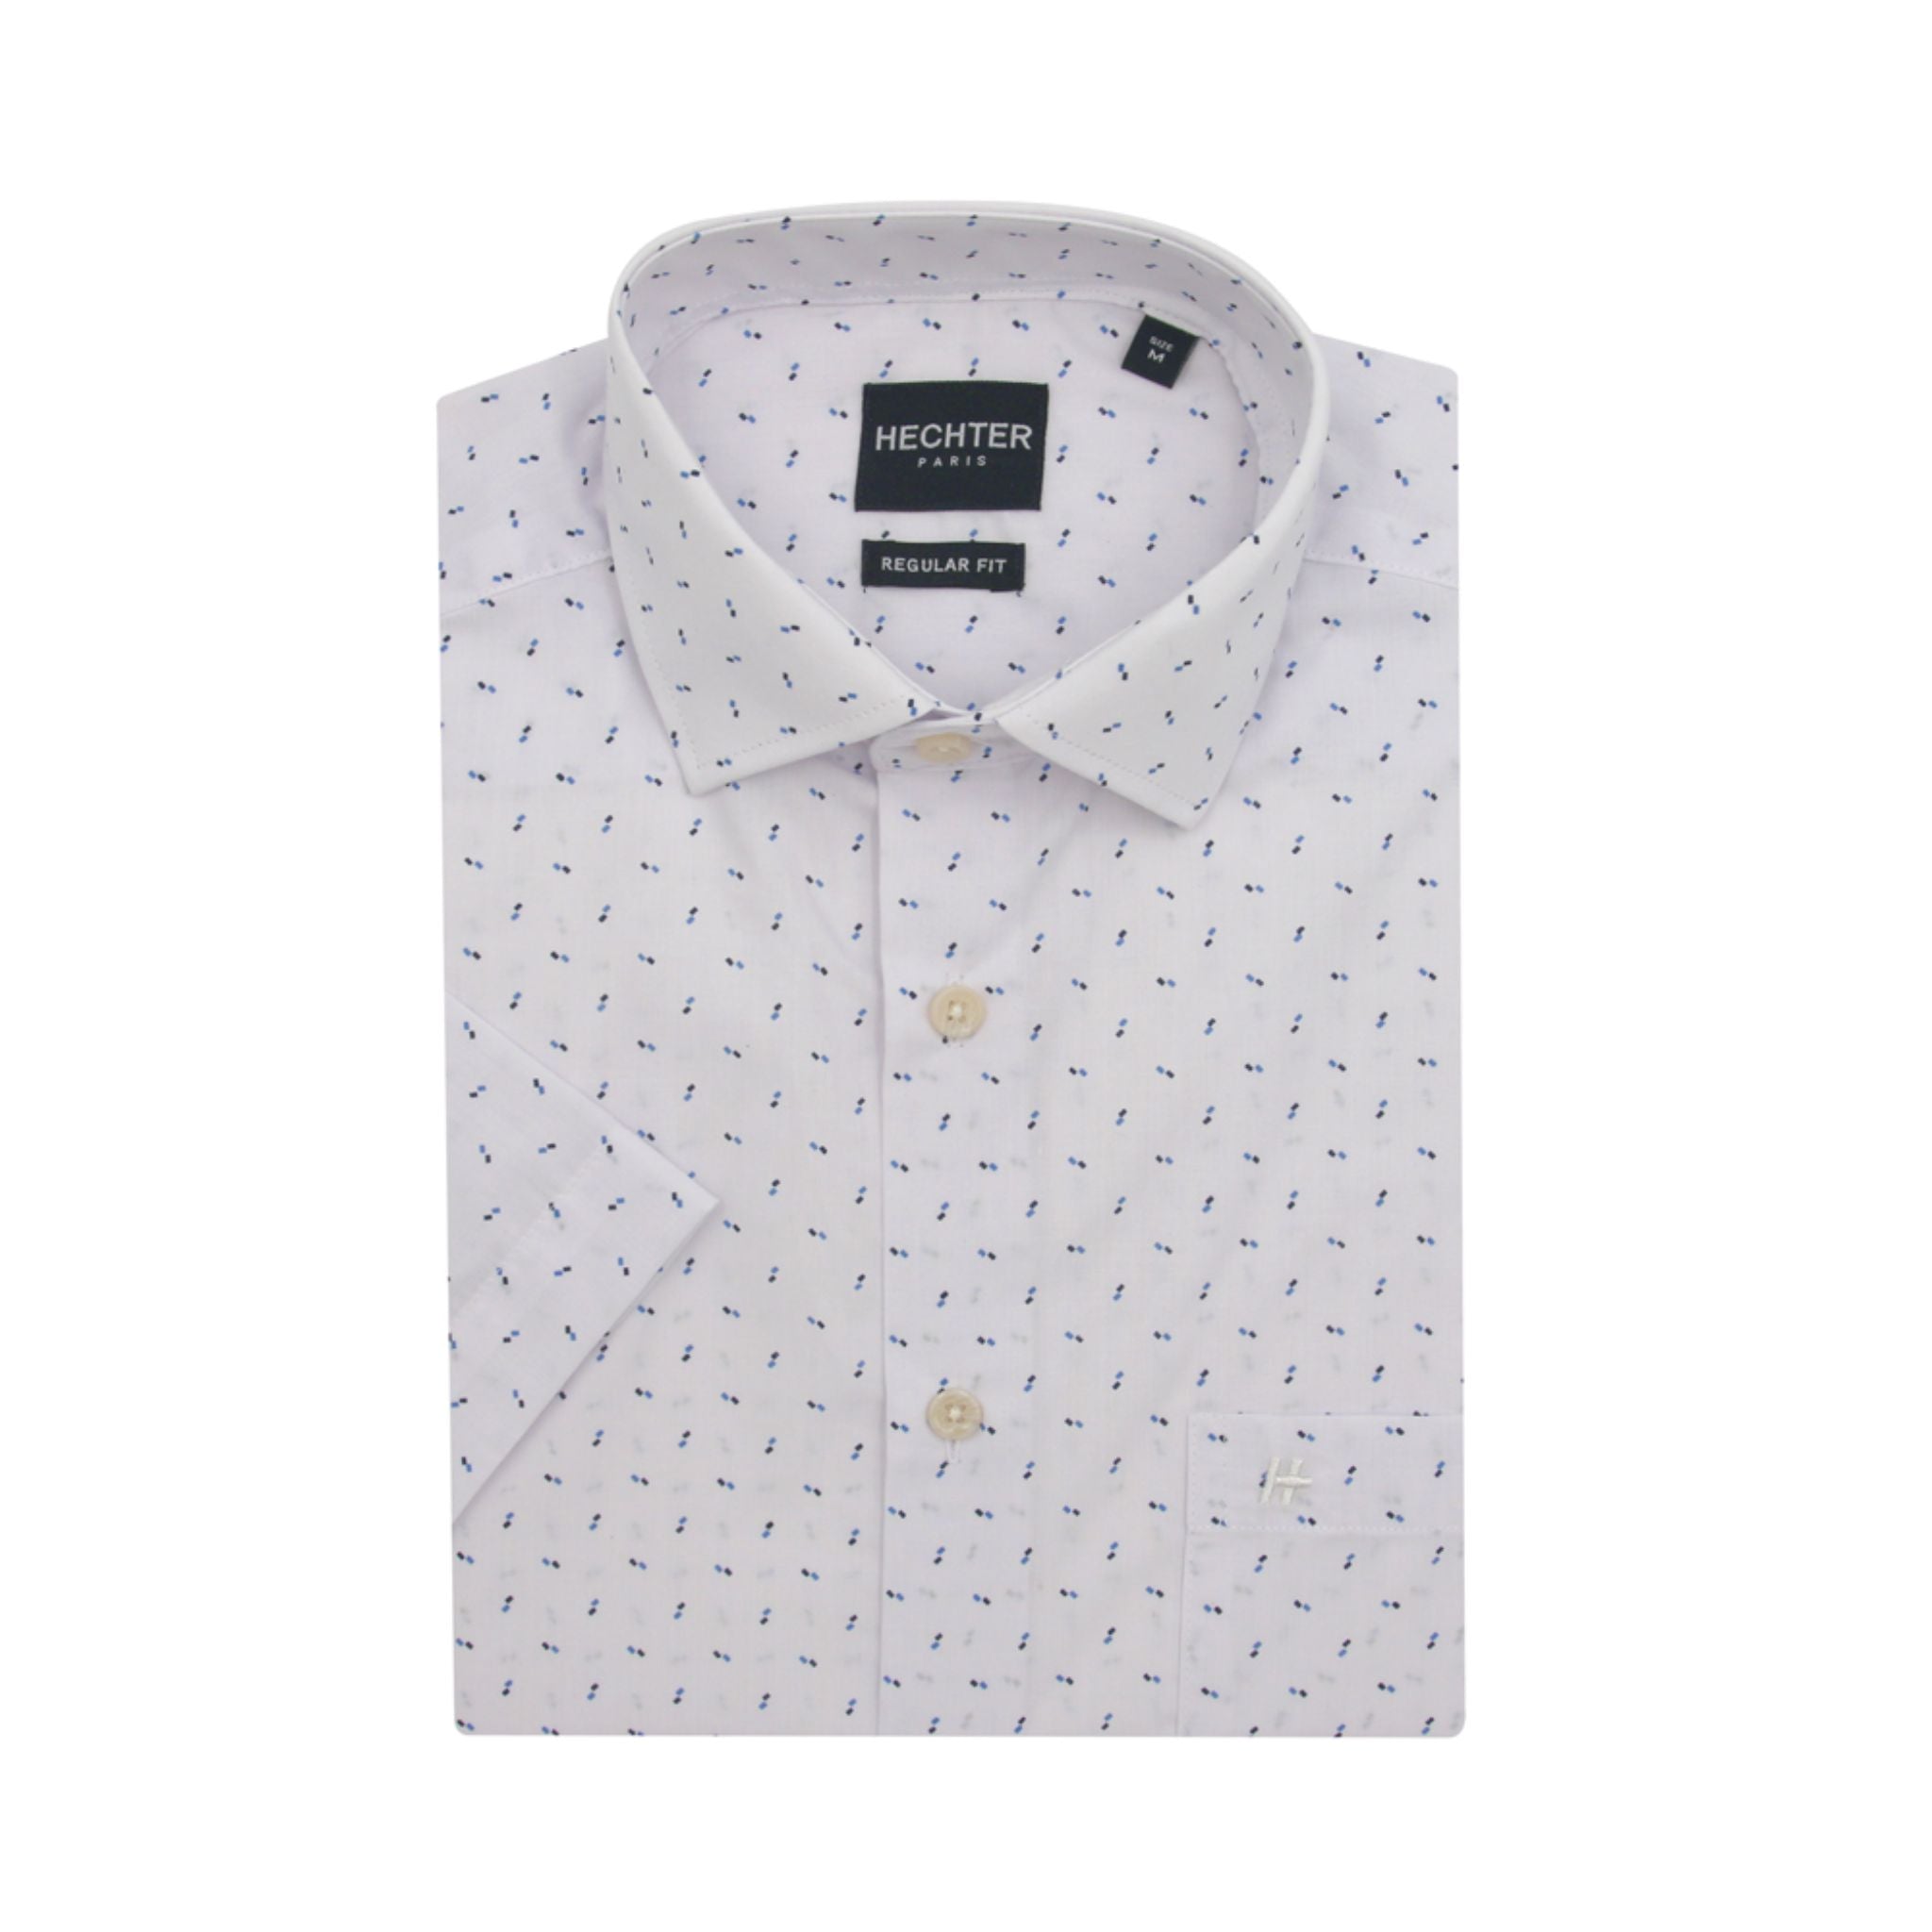 HECHTER Short-Sleeved Shirt - Blue & Brown Print on White